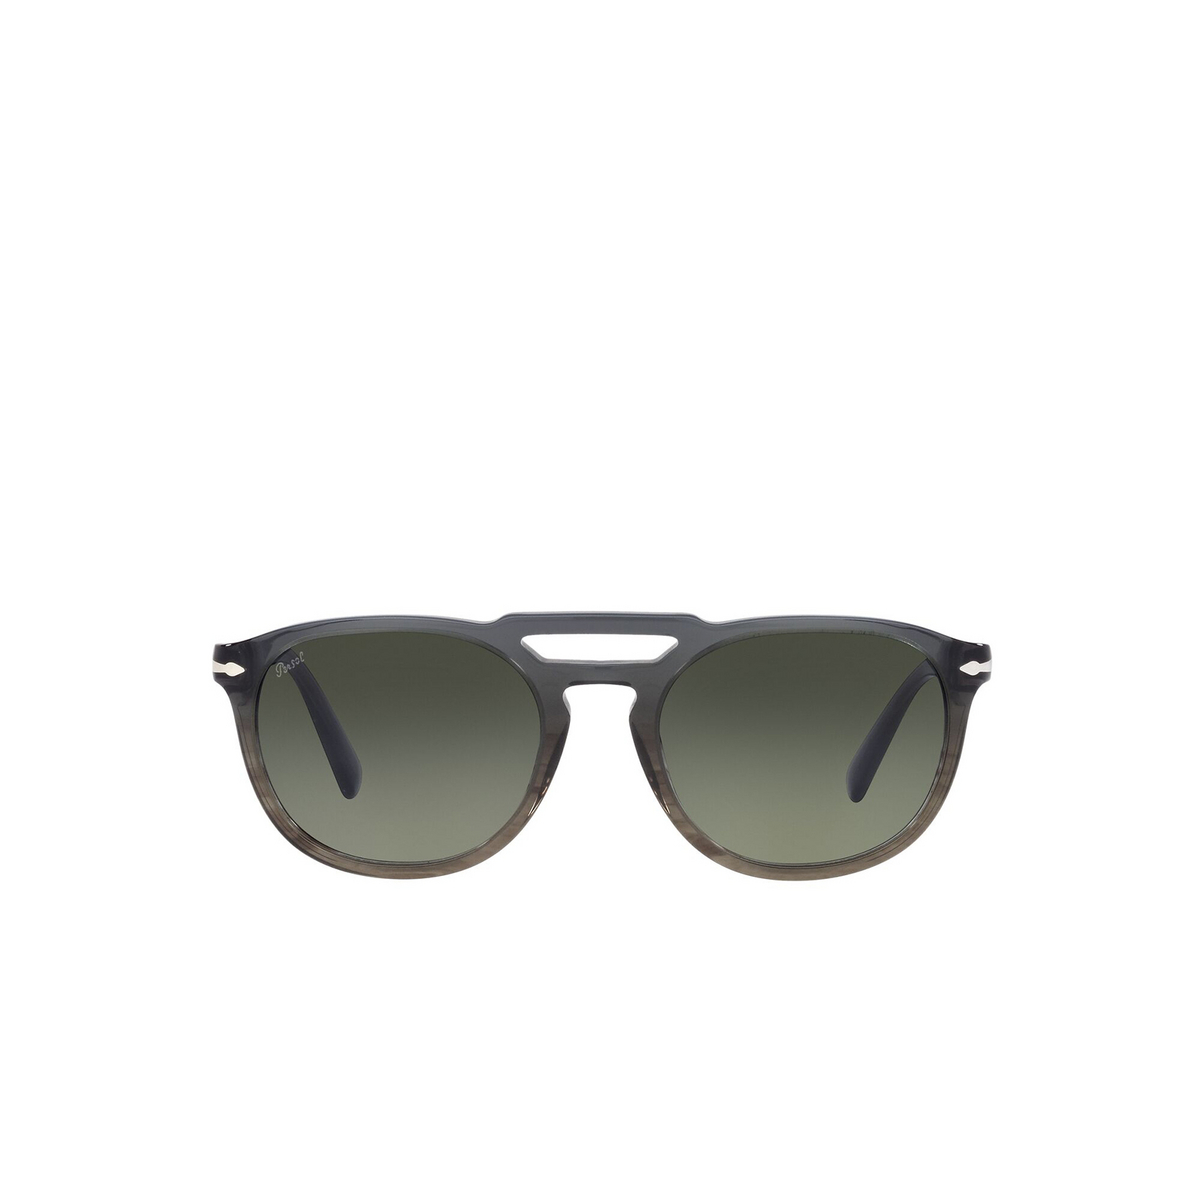 Persol® Square Sunglasses: PO3279S color Gray Gradient Striped Green 101271 - front view.